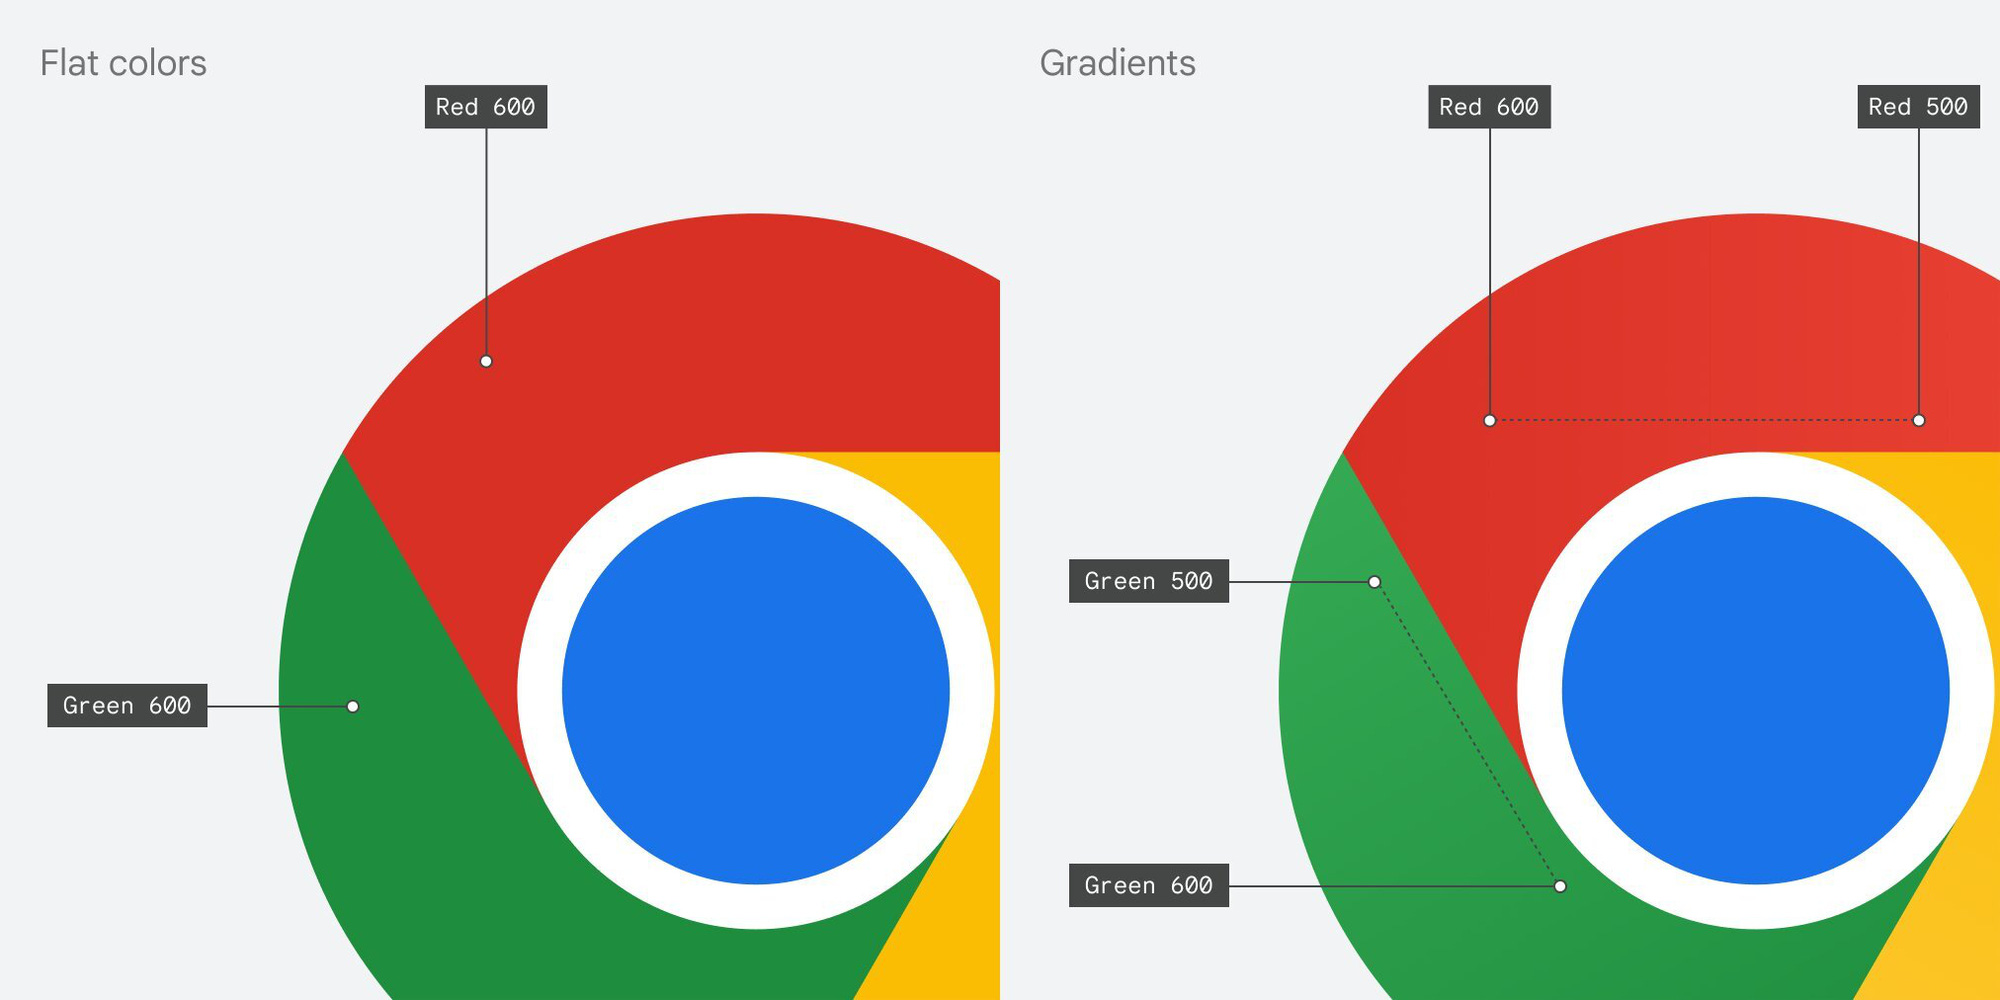 Google Chrome thay đổi logo lần đầu tiên sau 8 năm: Tưởng không ...